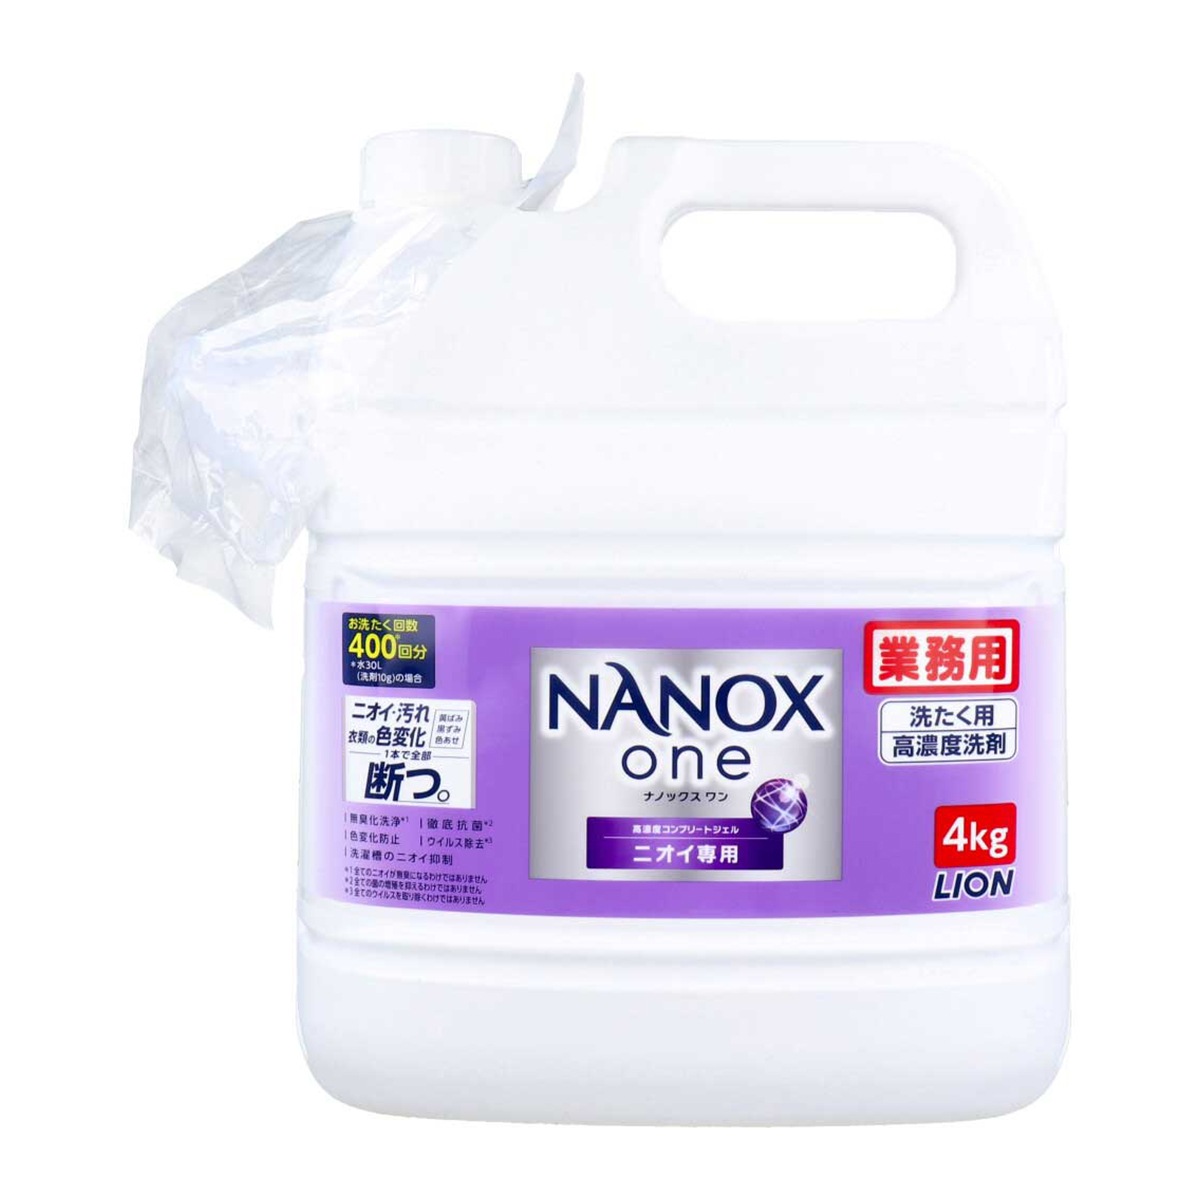 ライオン洗濯用合成洗剤 業務用 NANOXone ナノックスワン 洗たく用高濃度洗剤 高濃度コンプリートジェル ニオイ専用 パウダリーソープの香り 4kg